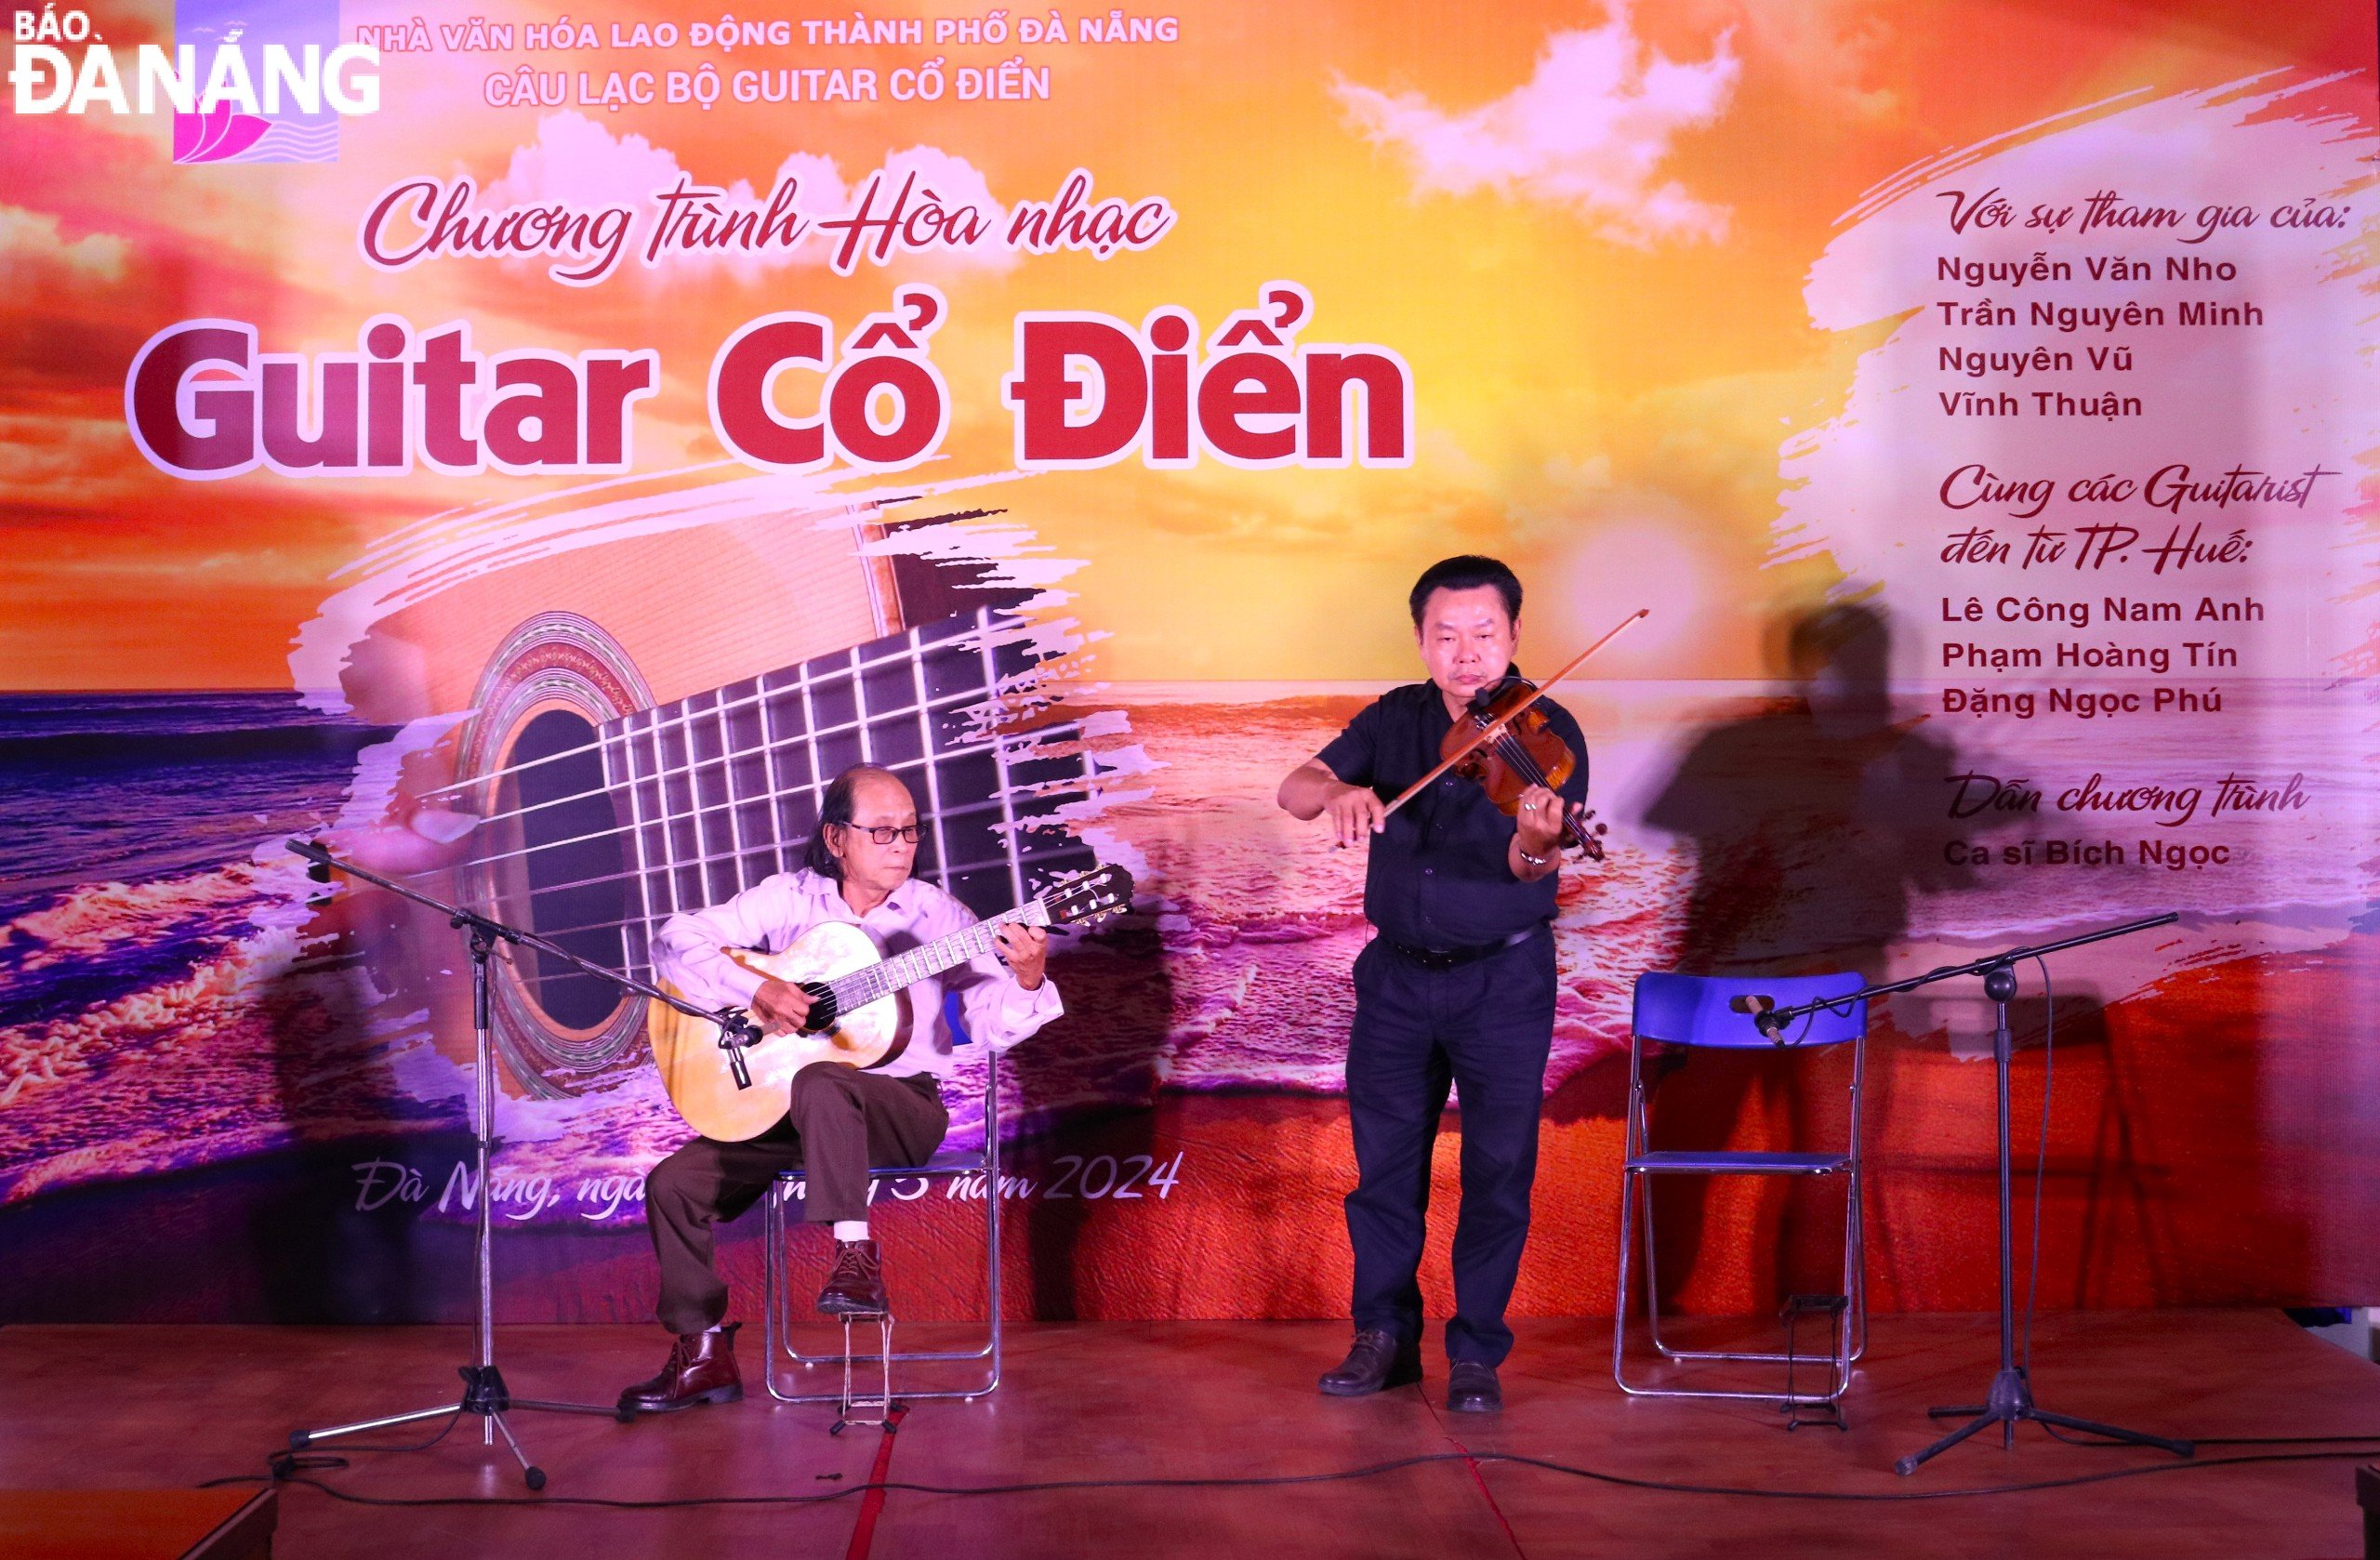 Tiết mục song tấu “Serenade” do hai nghệ sĩ Vĩnh Thuận (bên phải) và Đặng Ngọc Phú Hòa (bên trái) biểu diễn. Ảnh: N.Q